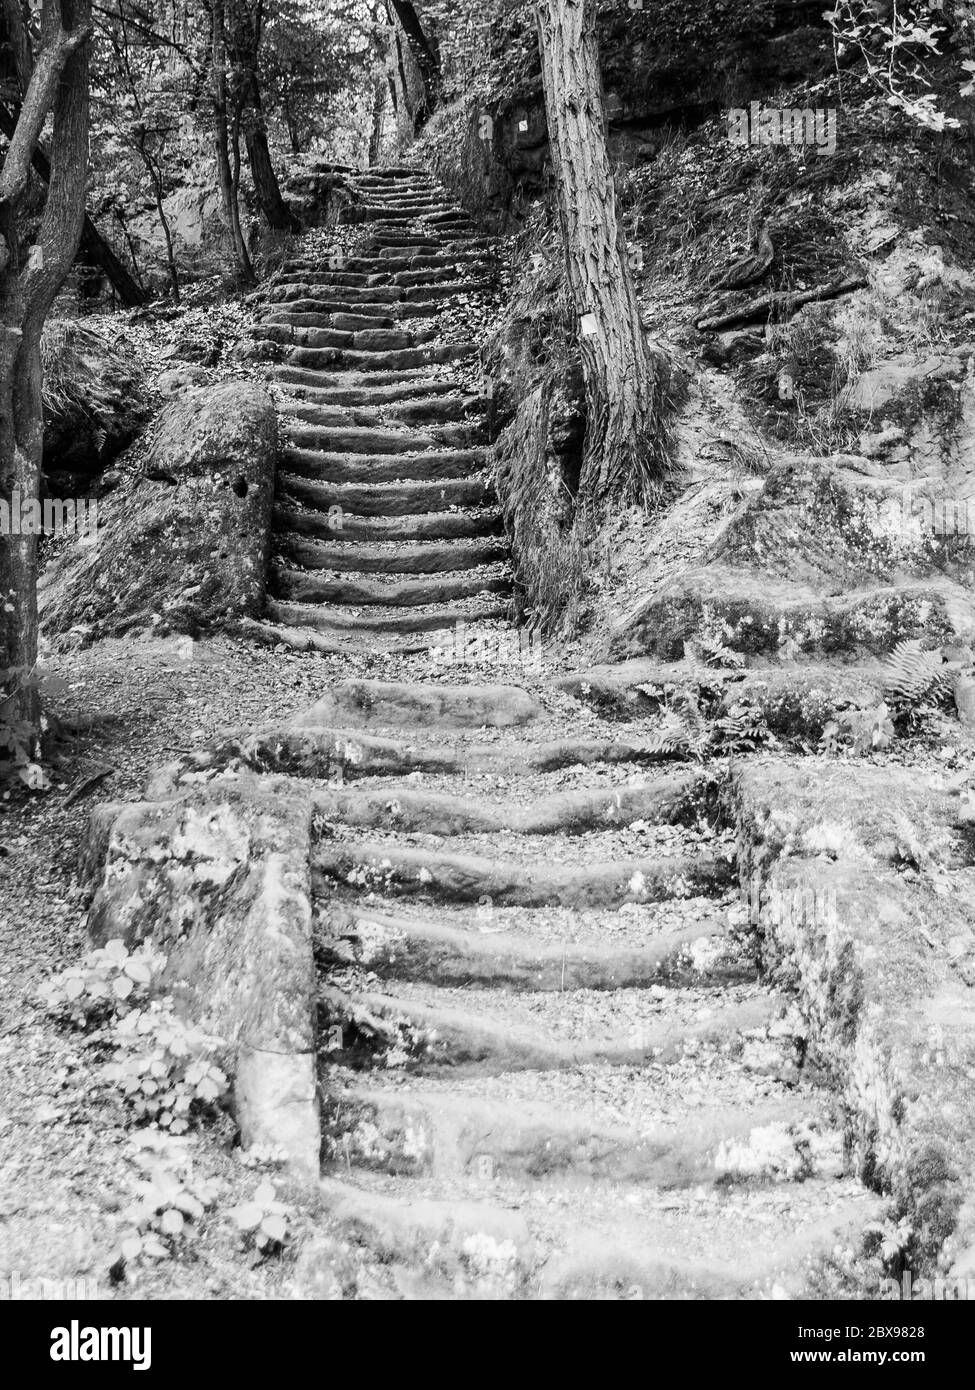 Lunghe scale in arenaria nella foresta, Mseno, Kokorinsko, Repubblica Ceca immagine in bianco e nero. Foto Stock